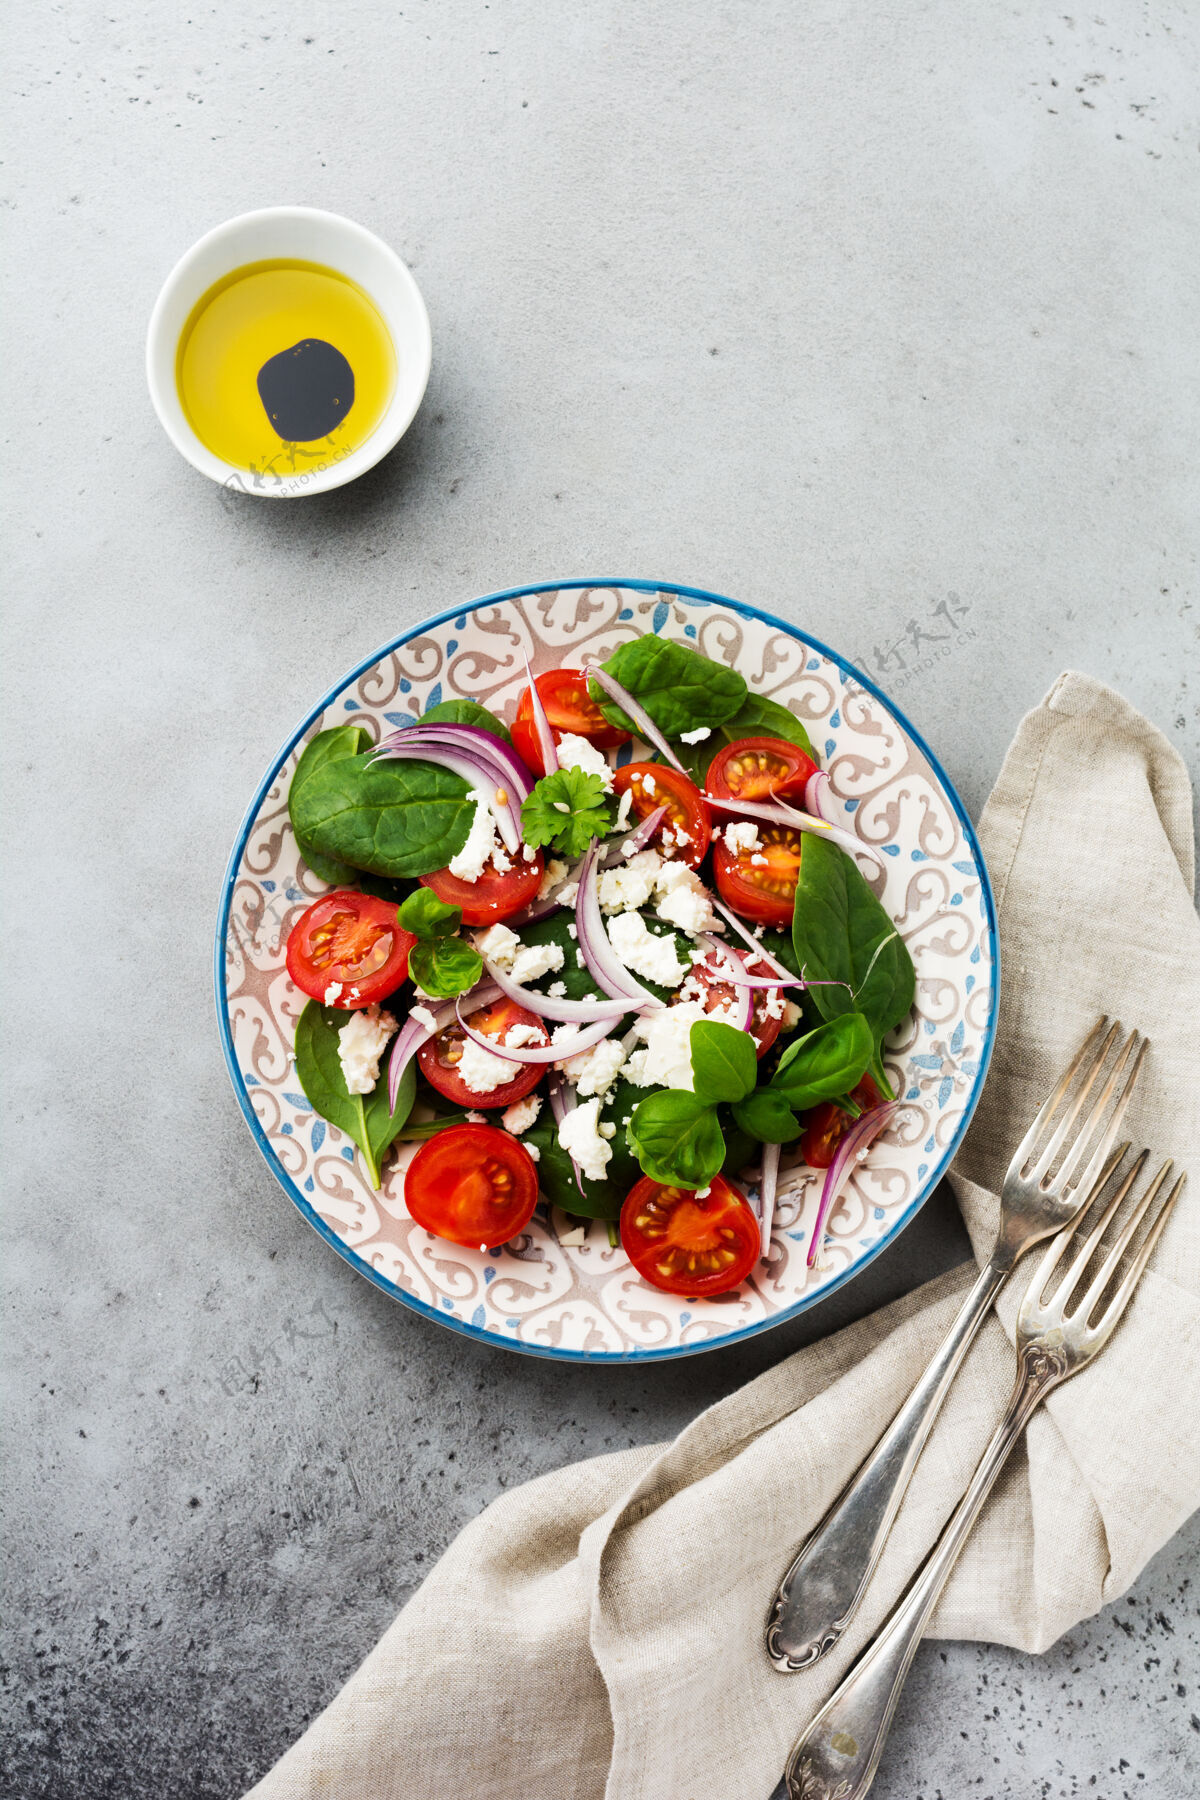 盘子西红柿 菠菜叶 红洋葱和羊乳酪沙拉放在浅色陶瓷盘子里 灰色的背面素食沙拉使用